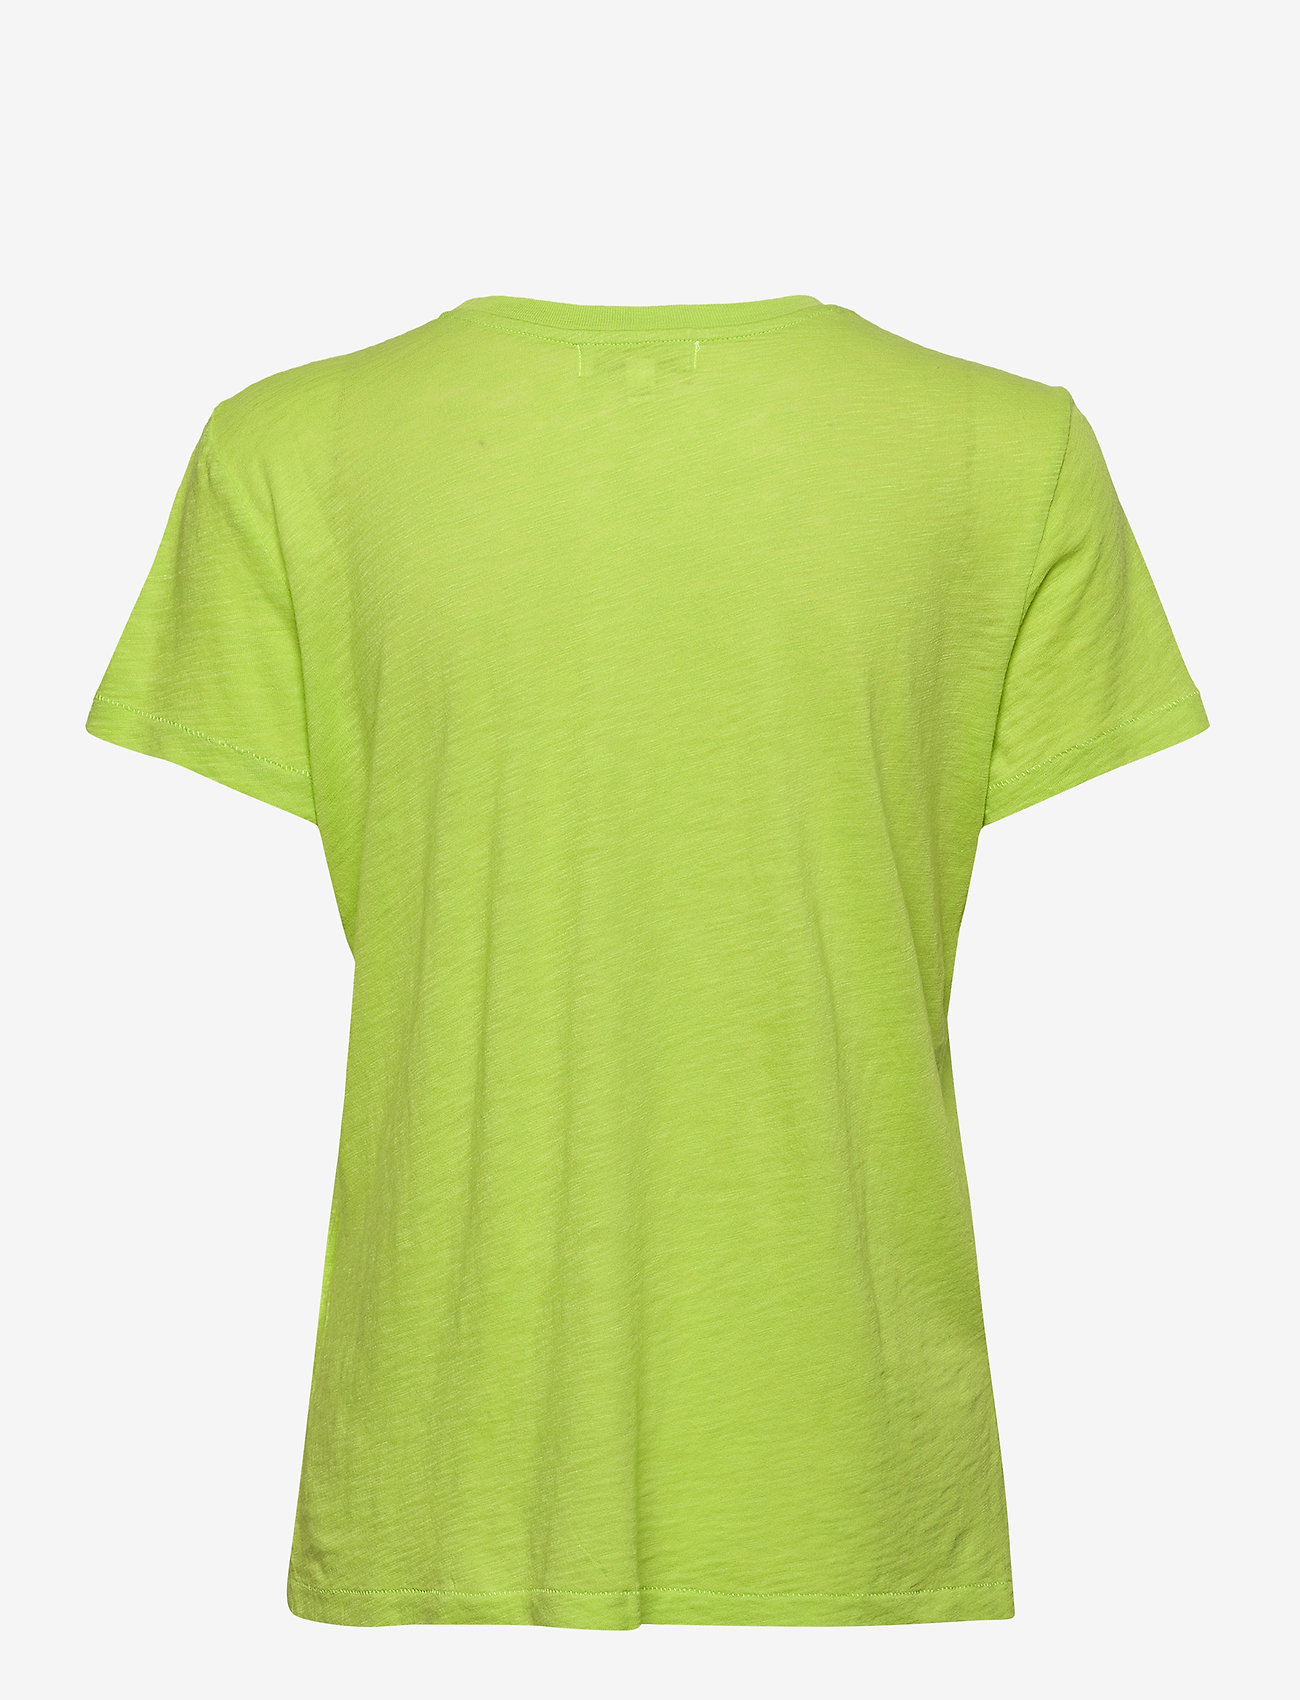 PJ Salvage - s/s shirt - palaidinukės - lime green - 1